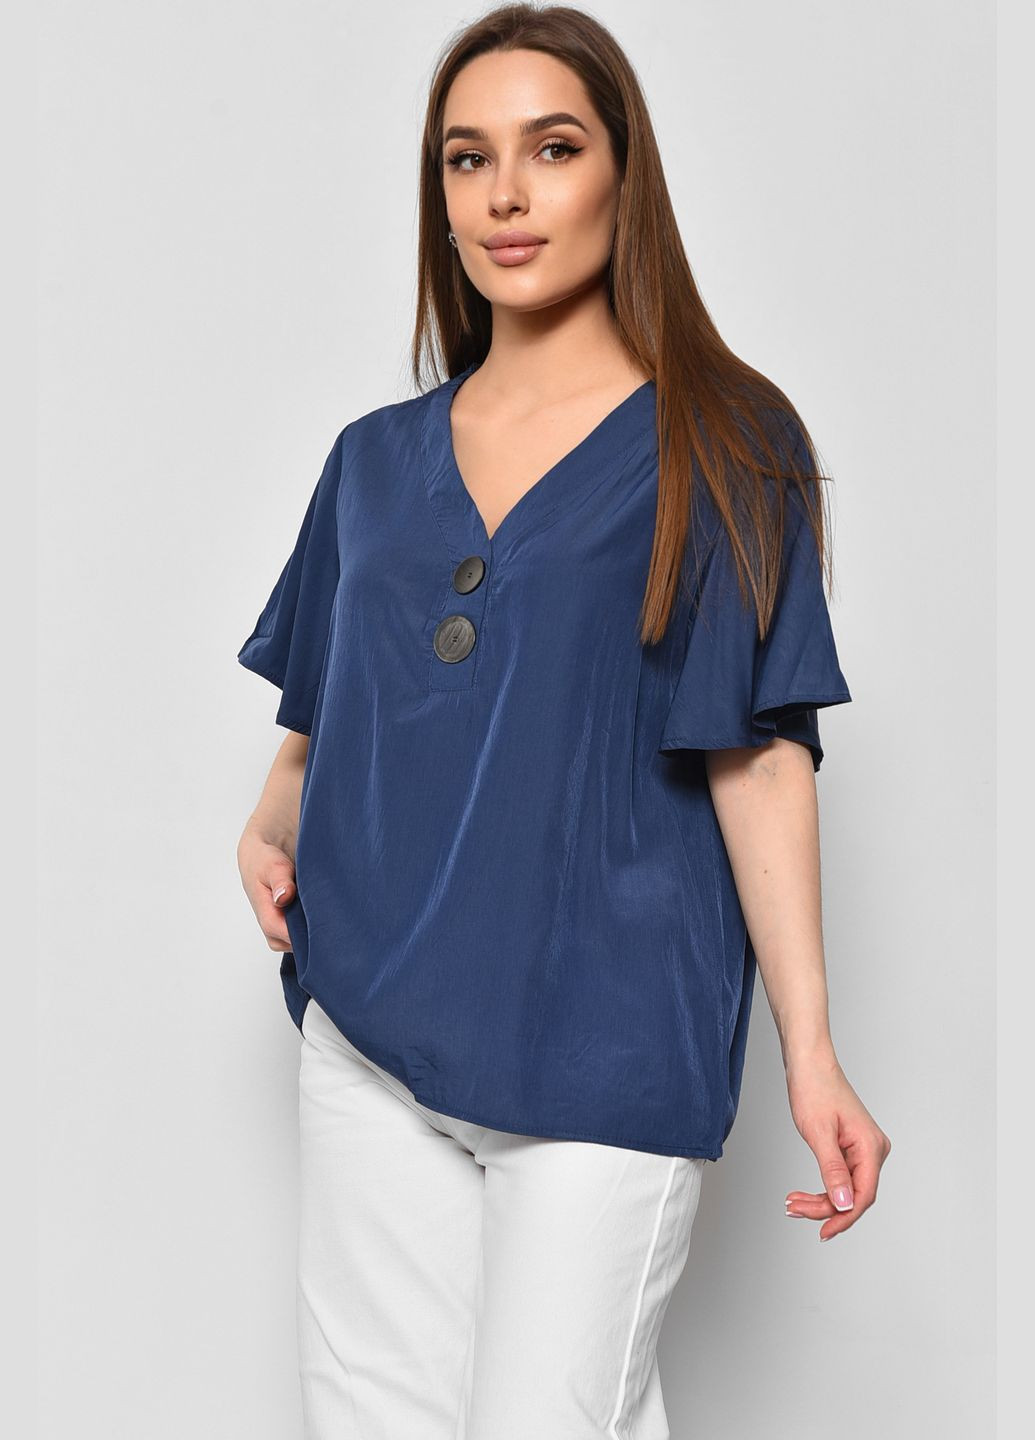 Синяя демисезонная блуза женская с коротким рукавом синего цвета с баской Let's Shop